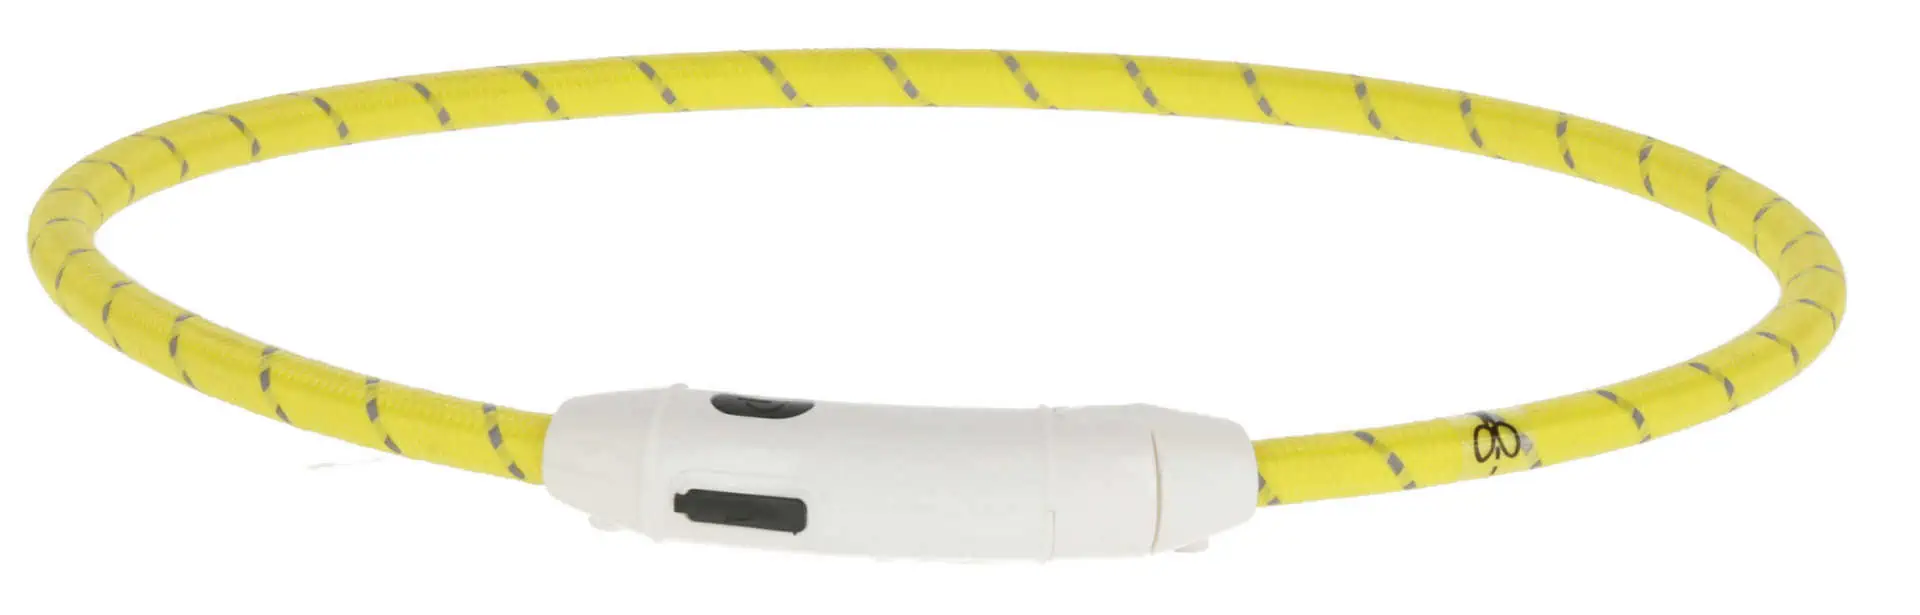 Maxi Safe LED krage nylon längd 65 cm